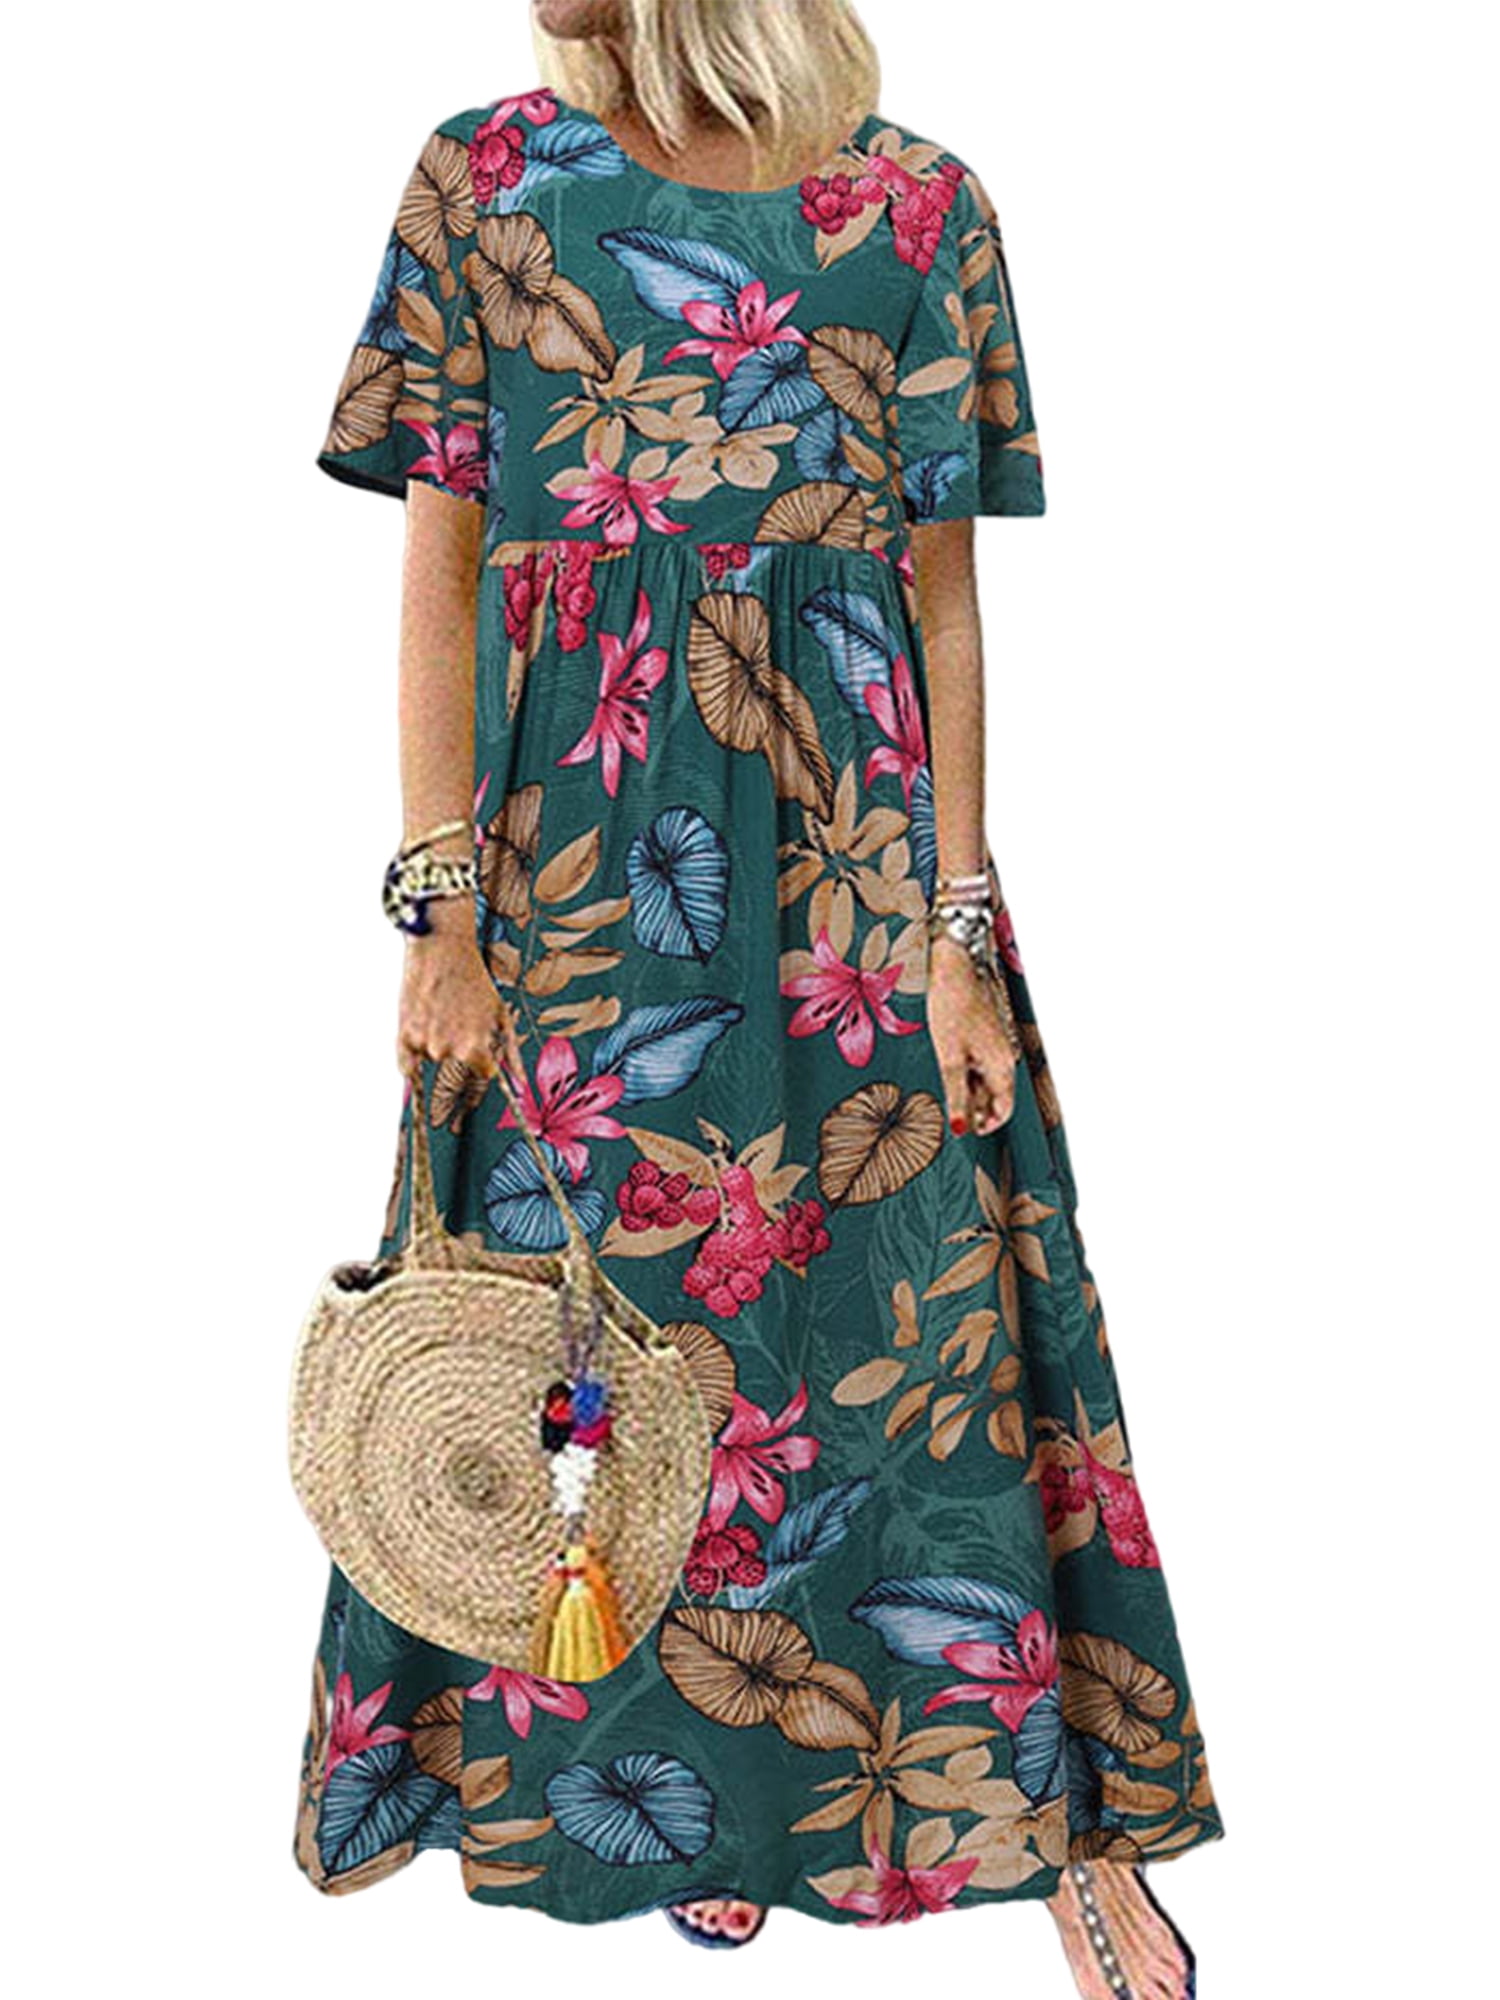 Lumento Women S Summer Dress Beach Sundress Loose Dress Maxi Dress Bohemian Print Short Sleeve